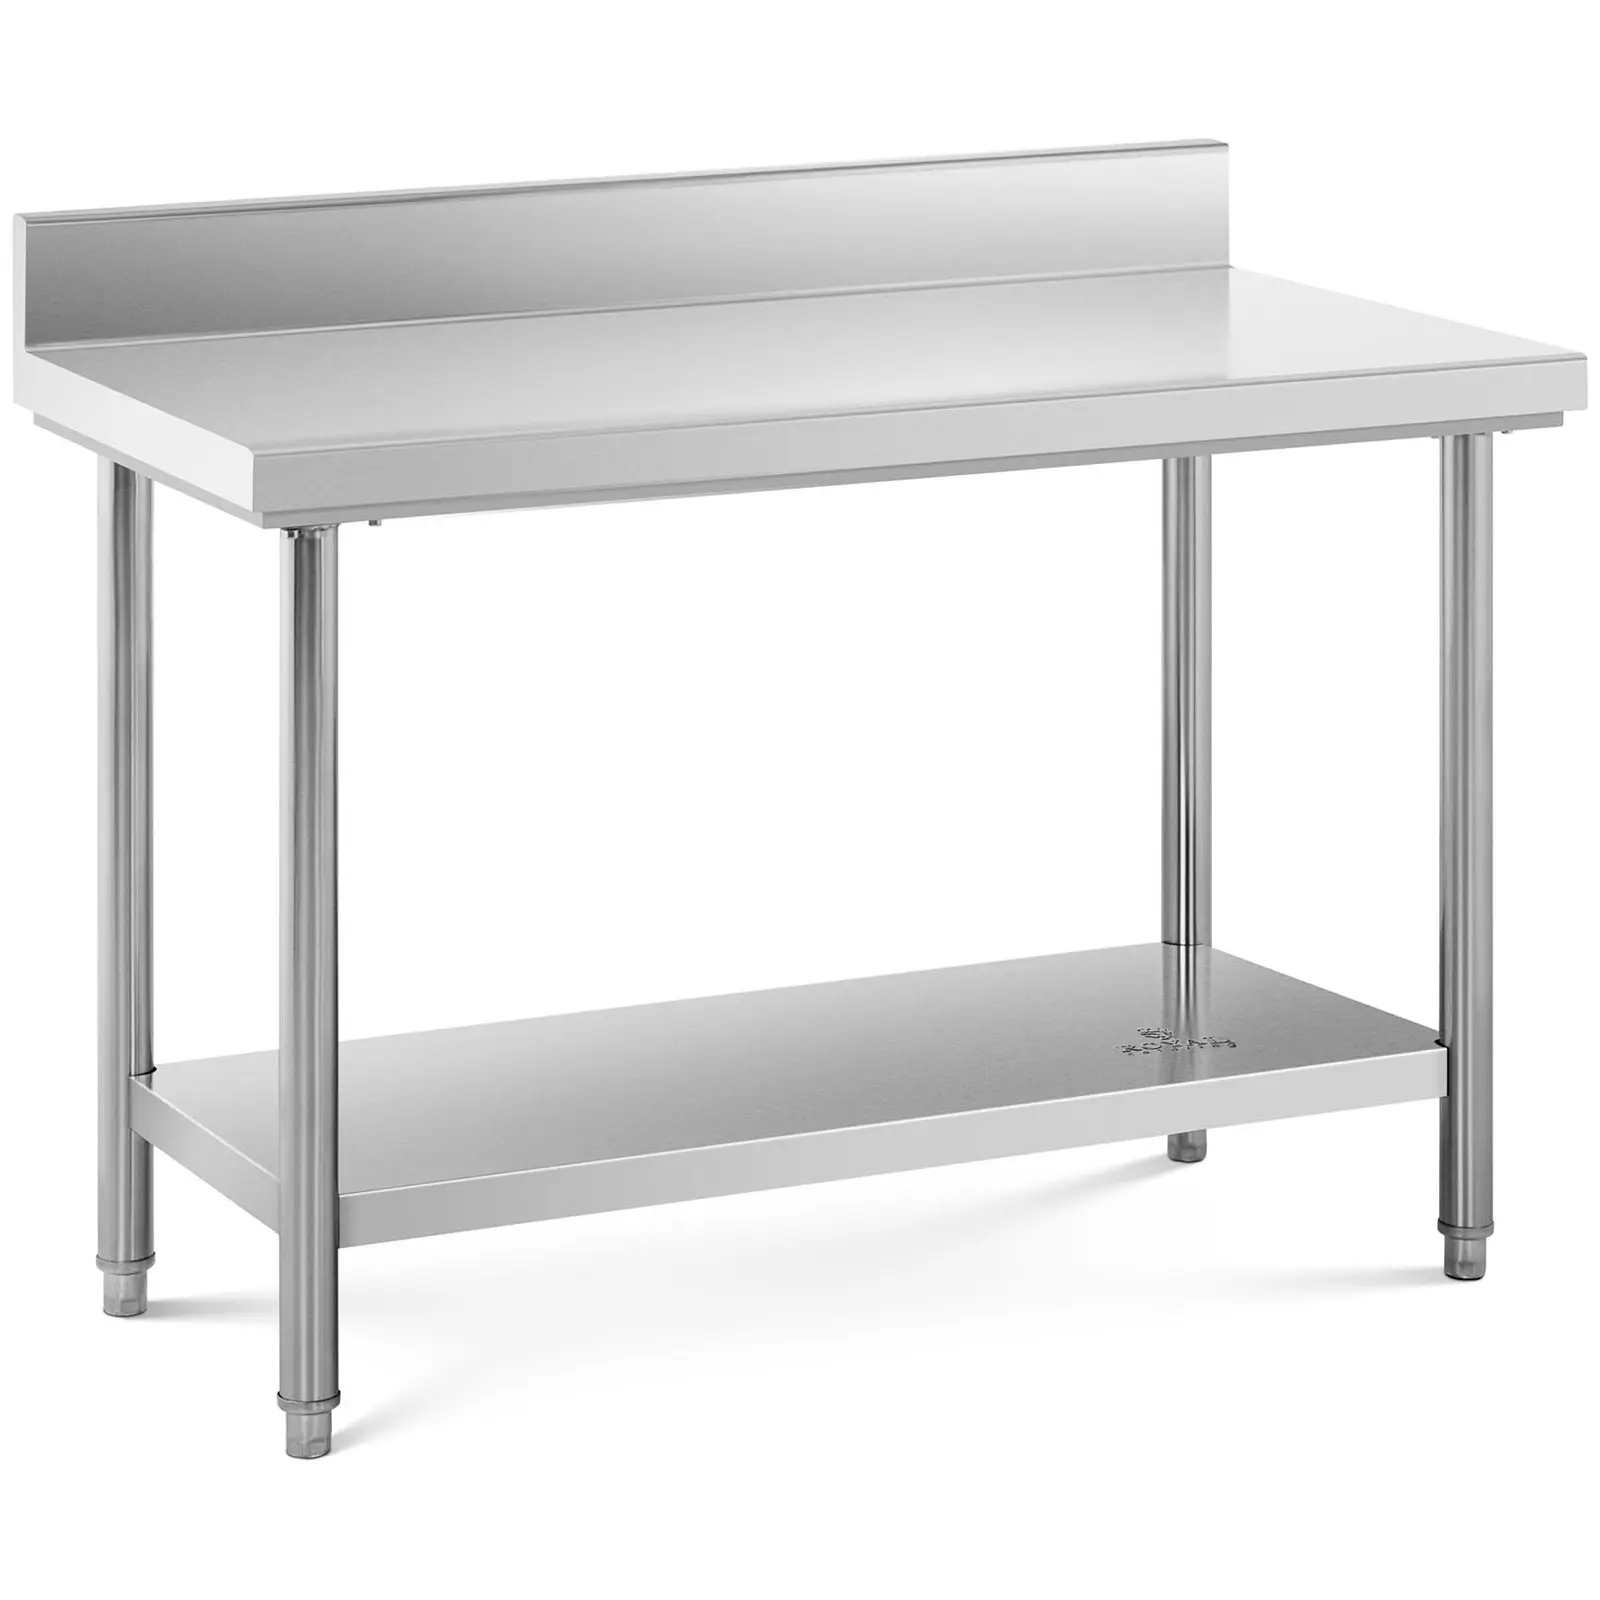 Pracovní stůl z ušlechtilé oceli 120 x 60 cm s lemem nosnost 137 kg - Pracovní stoly Royal Catering